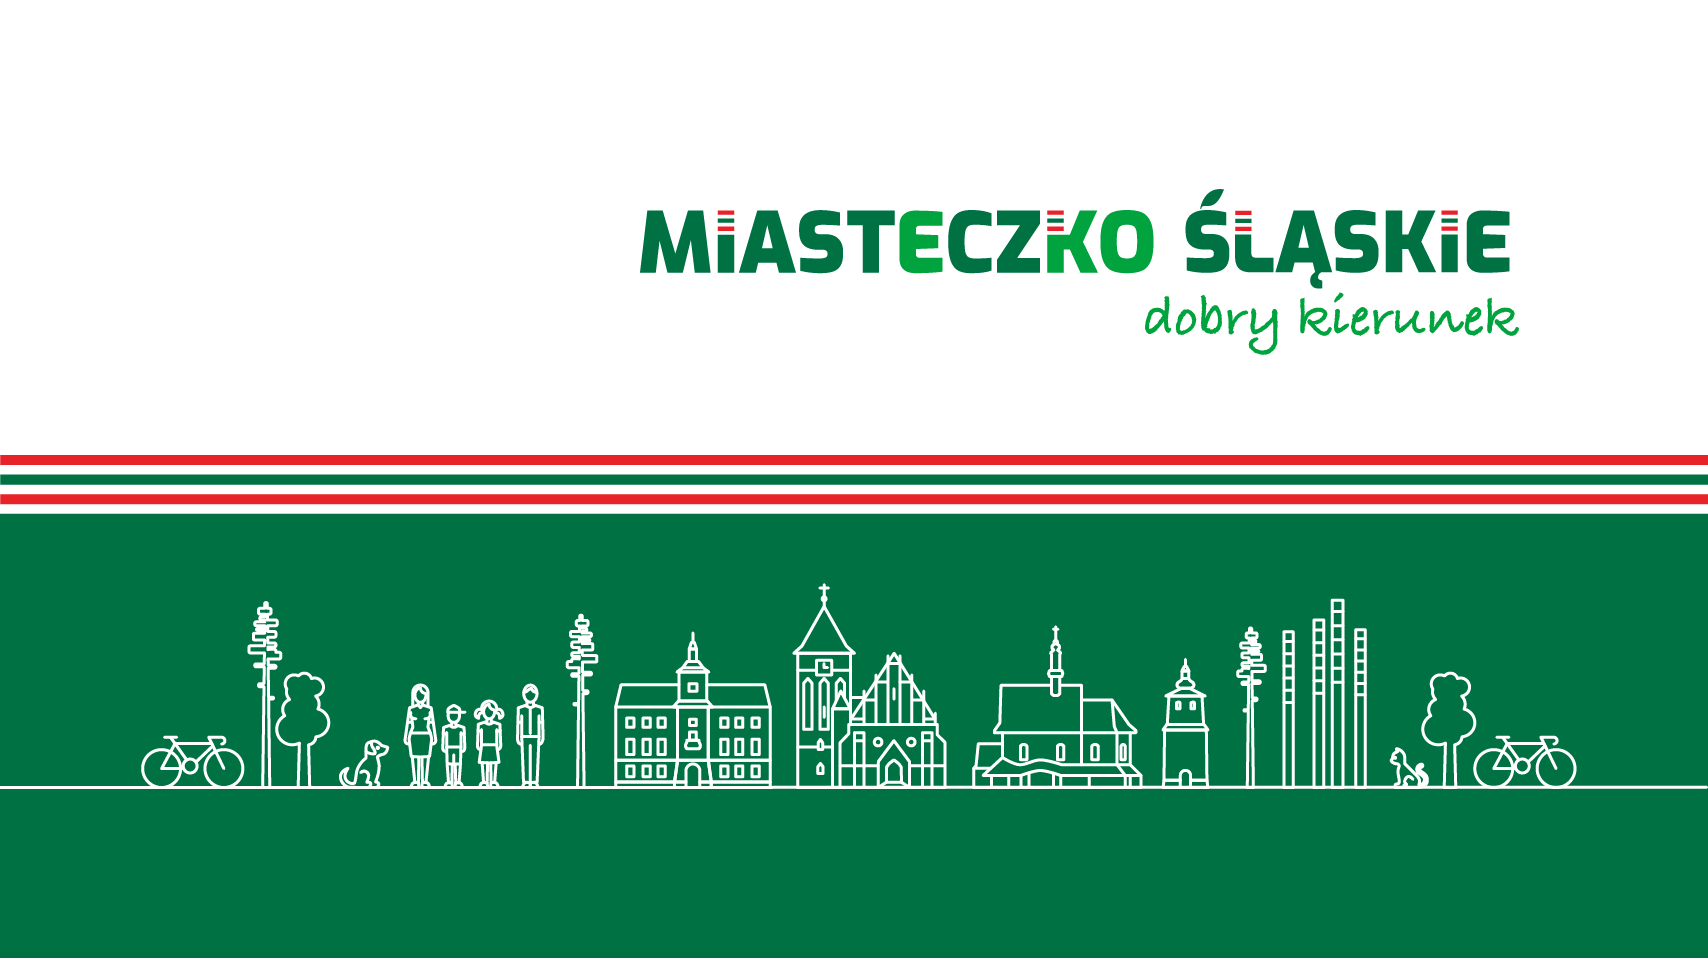 Zarządzenie nr 1257/22 Burmistrza Miasta Miasteczko Śląskie